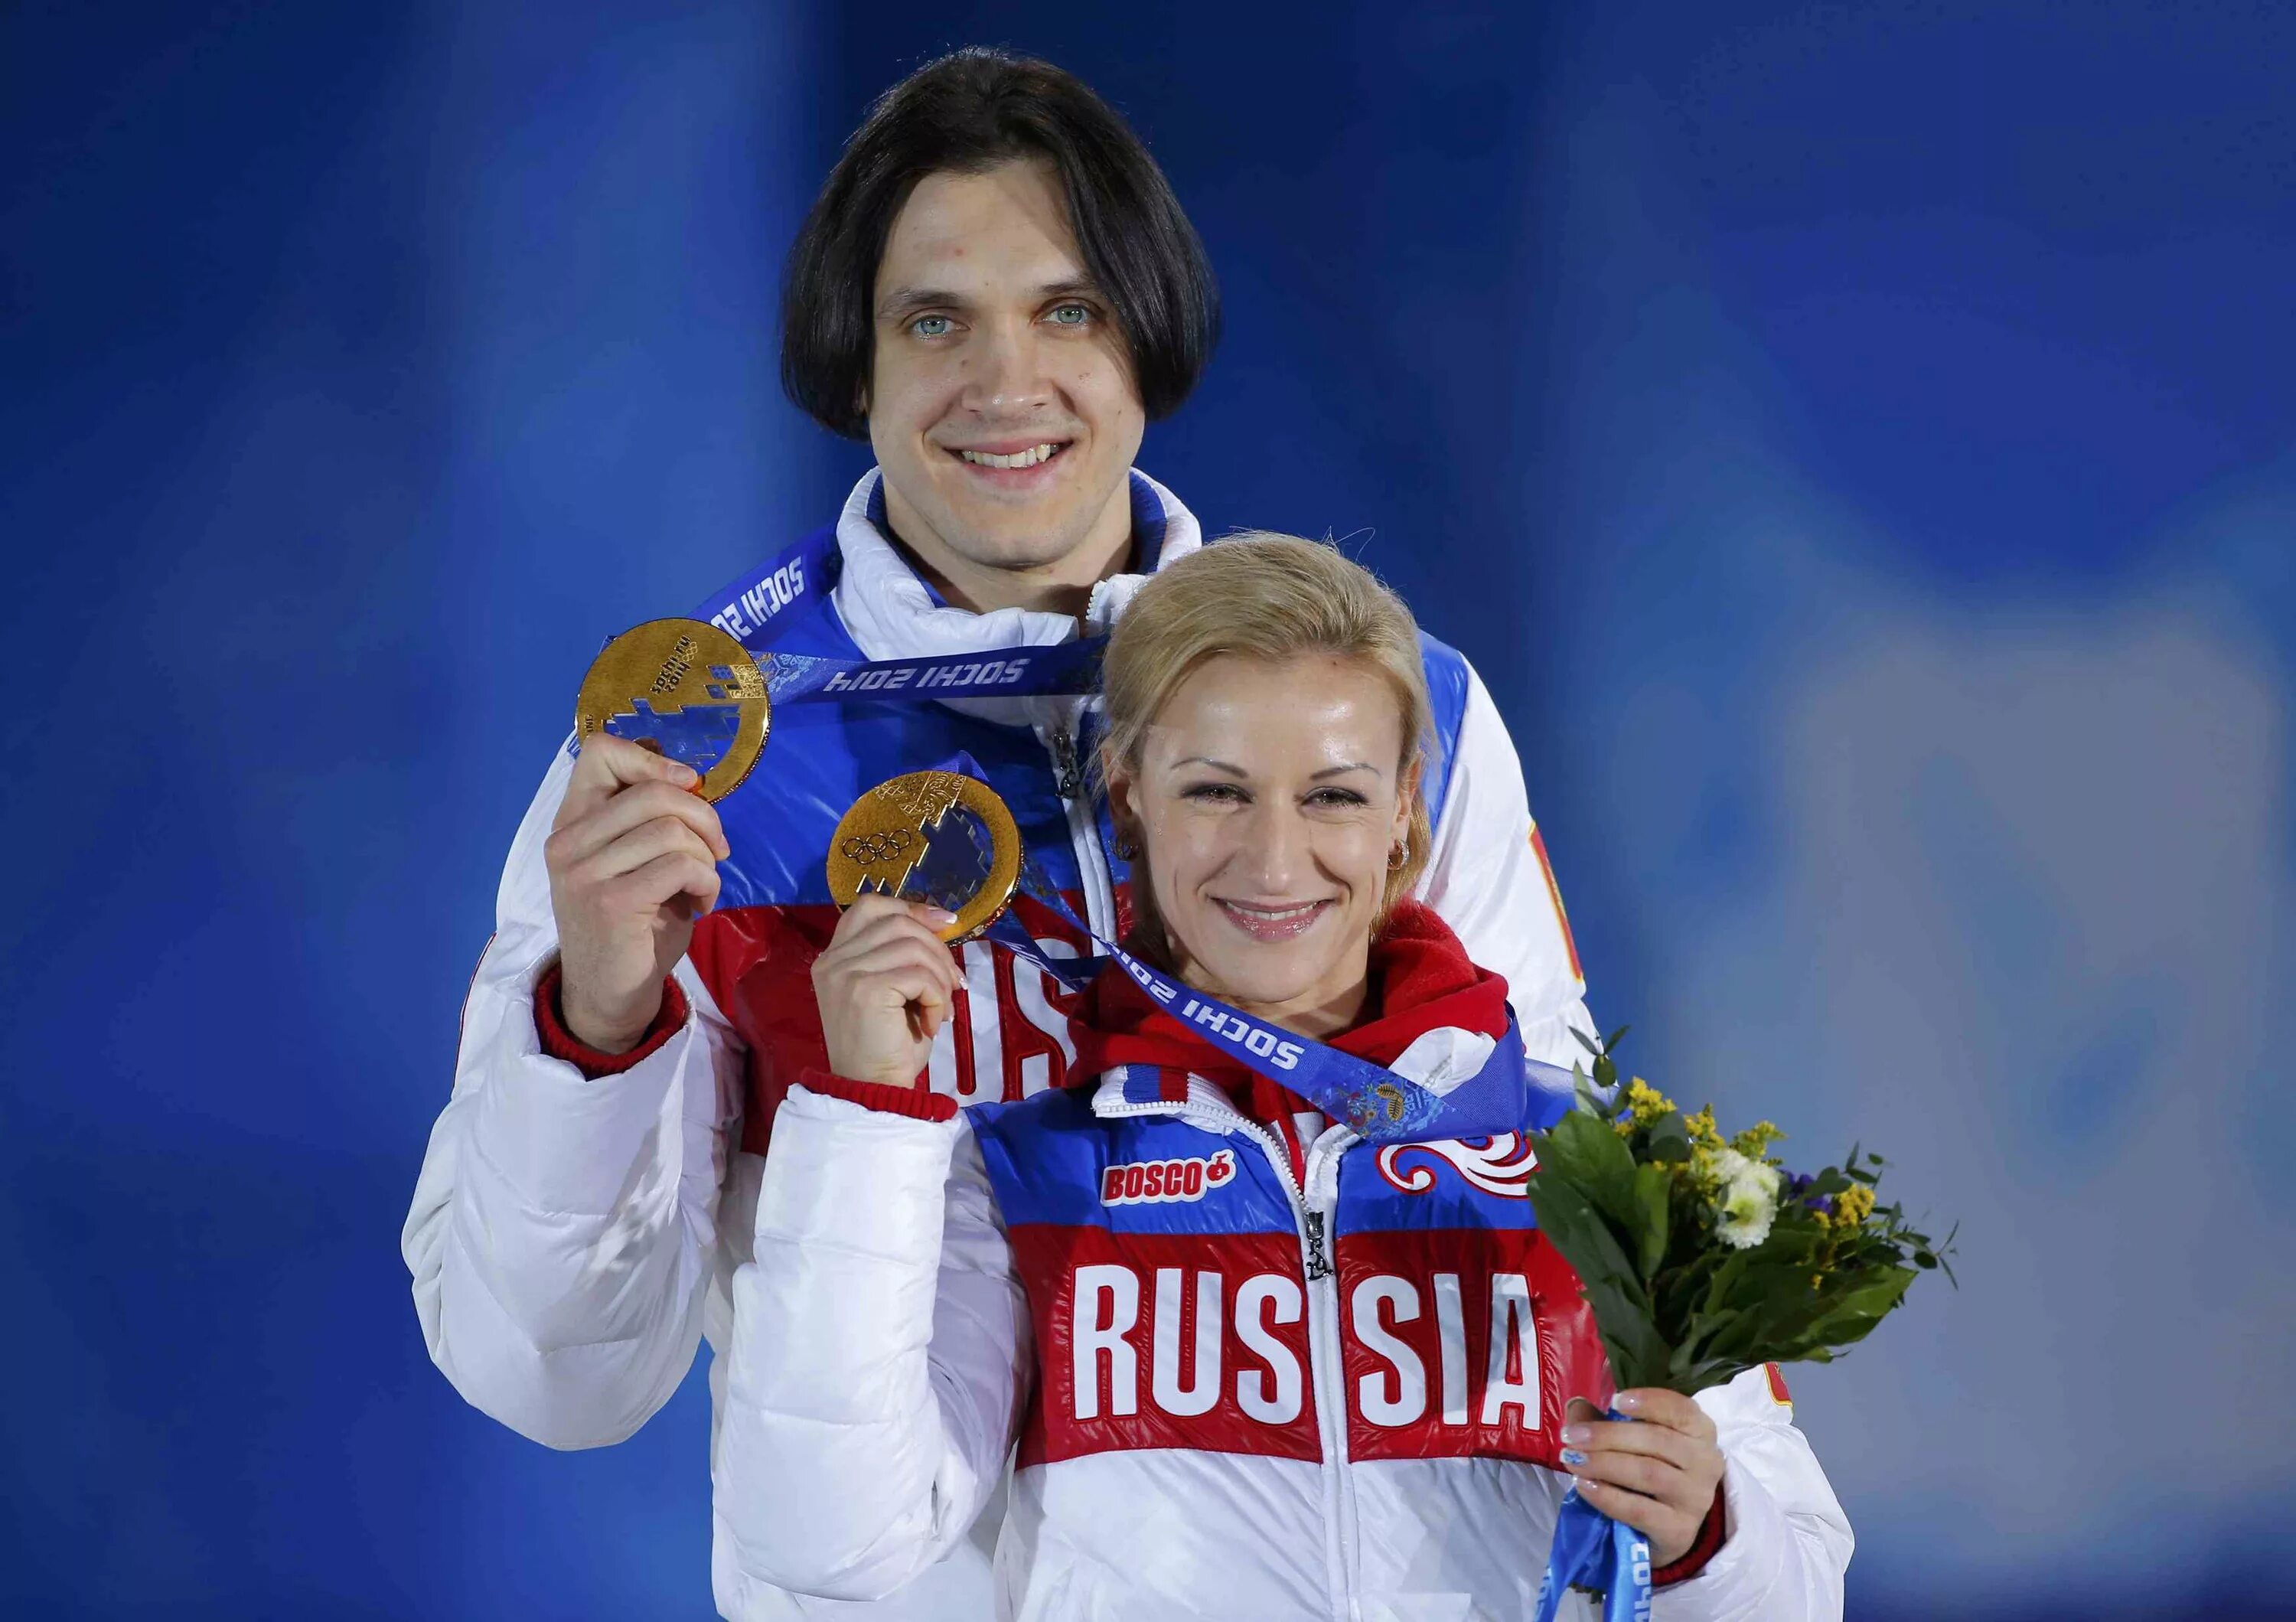 Волосожар - Траньков на Олимпиаде в Сочи-2014.